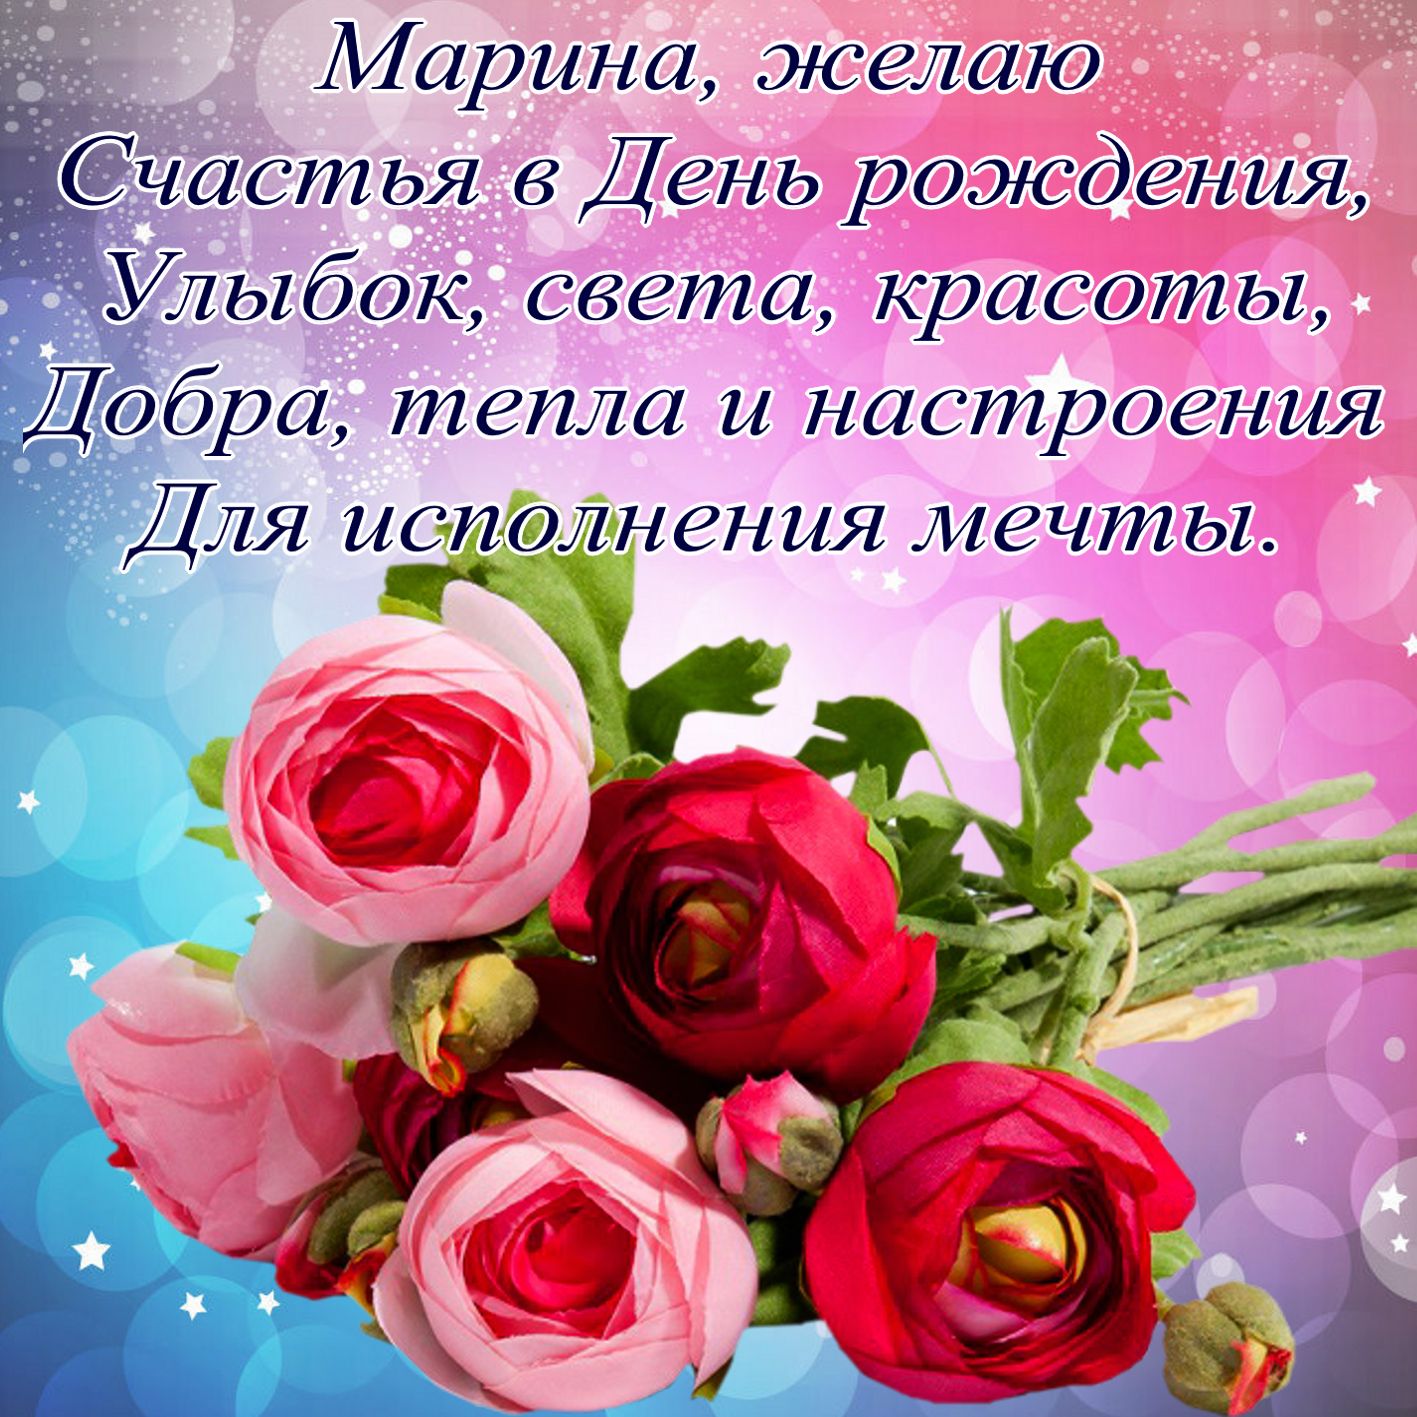 Пожелание и цветы Марине на День рождения